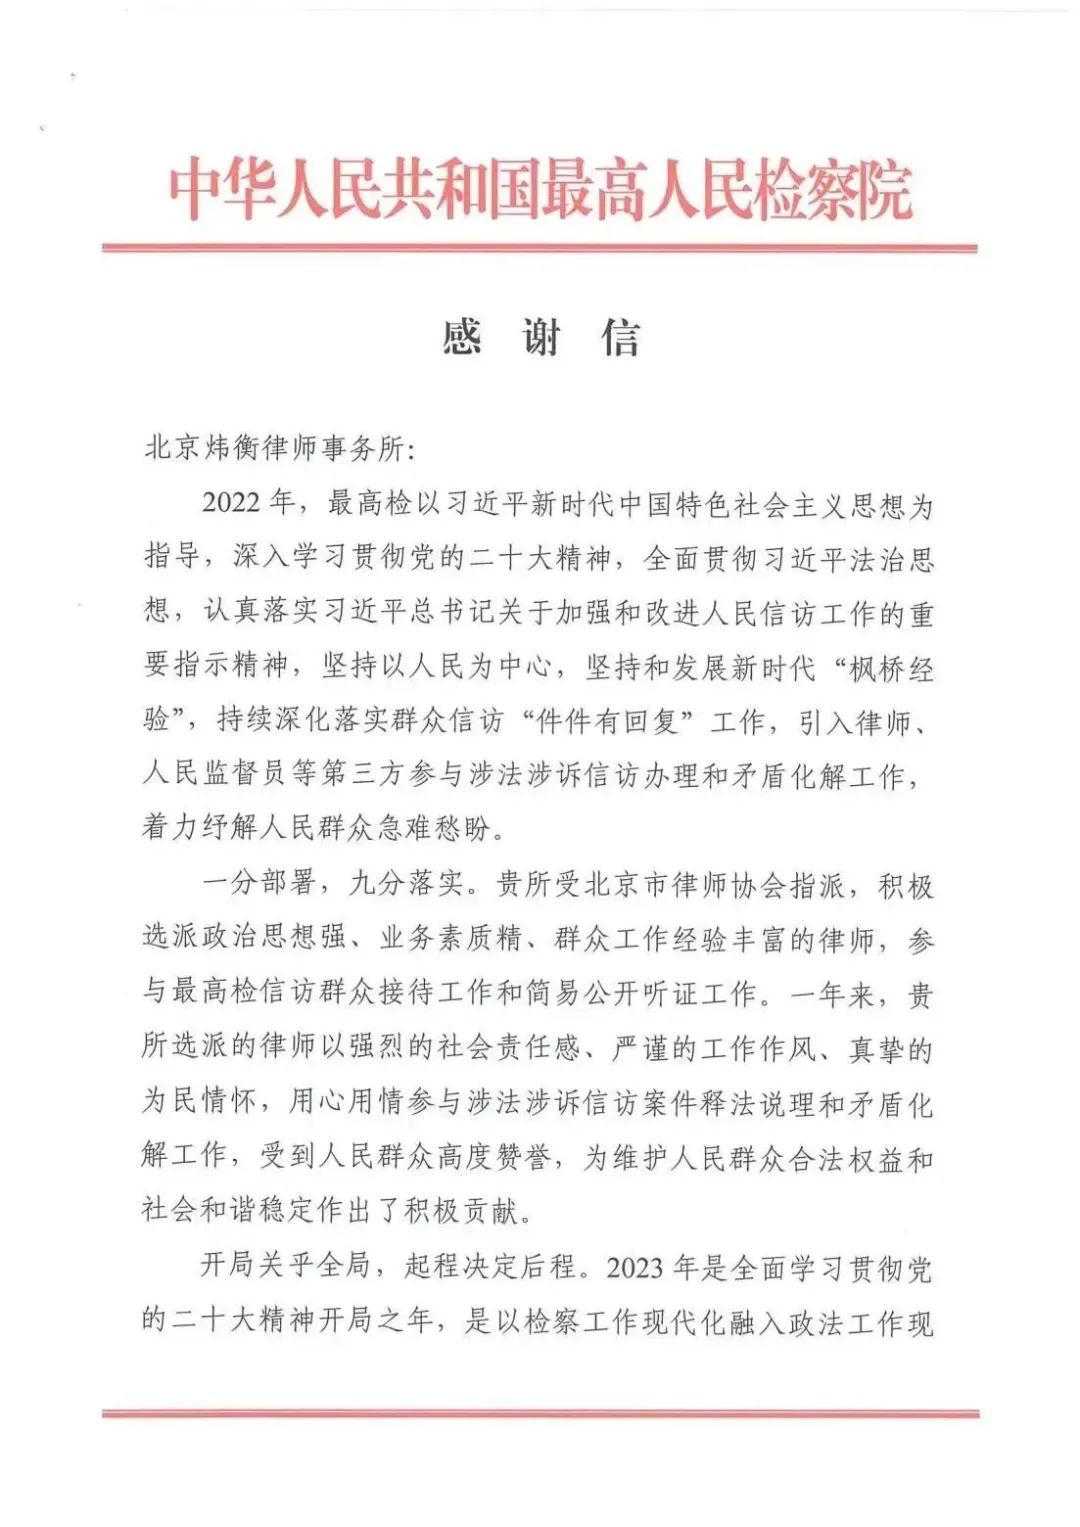 北京市炜衡律师事务所喜获最高人民检察院感谢信